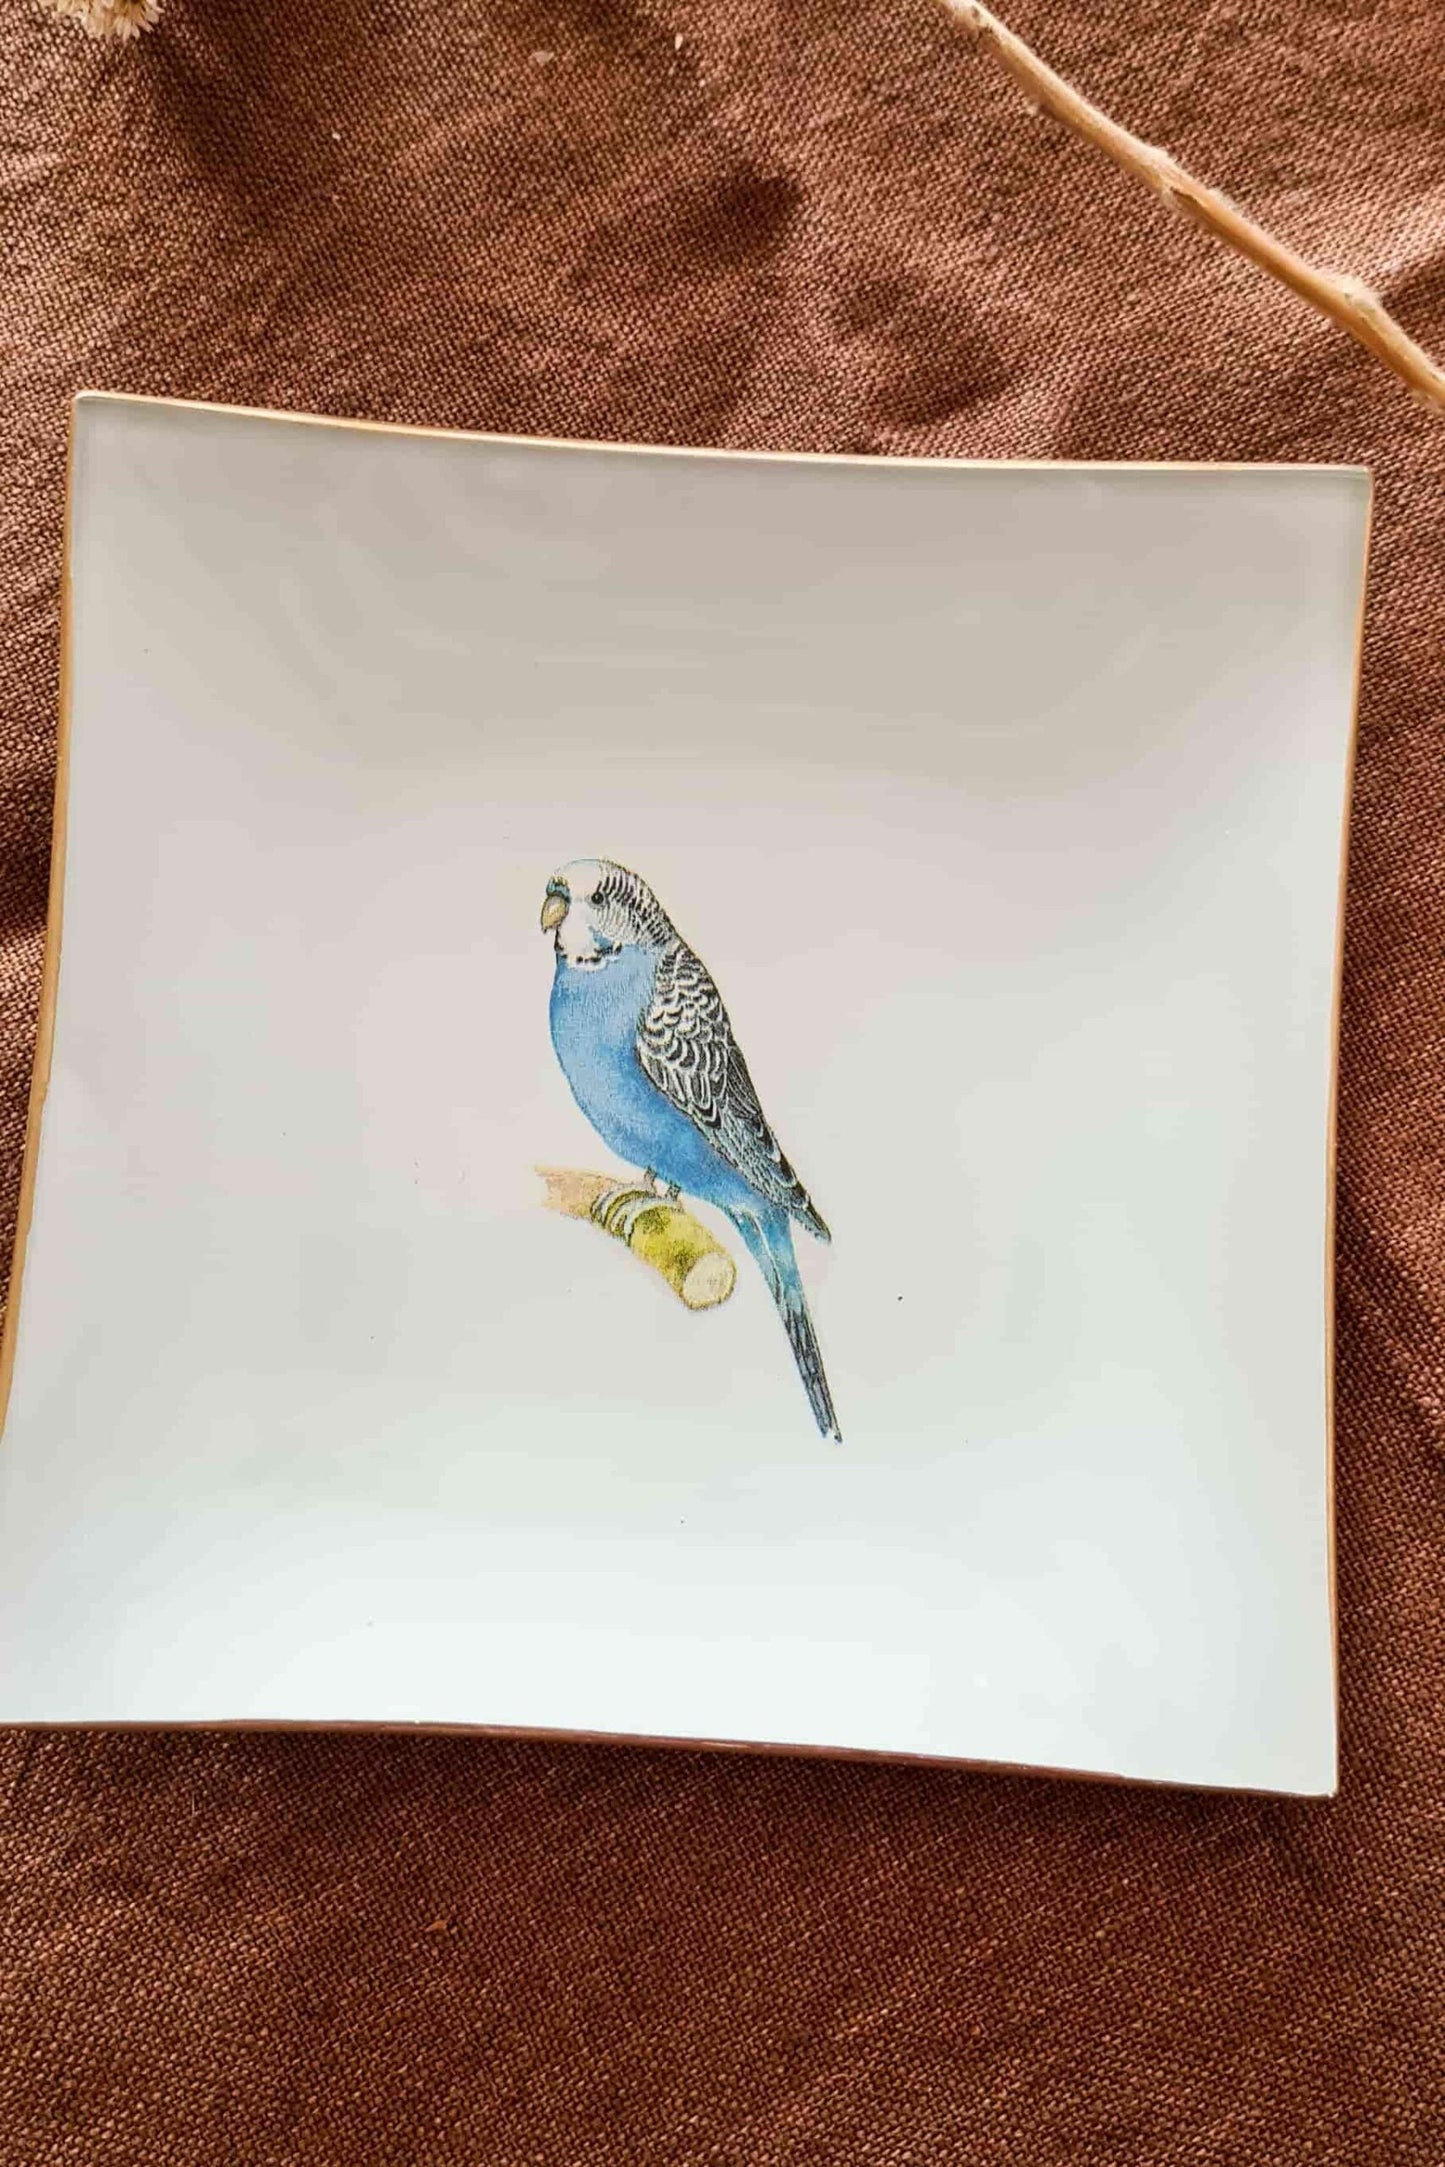 Plato Cuadrado Joyero16cm Pájaro azul (Cata)